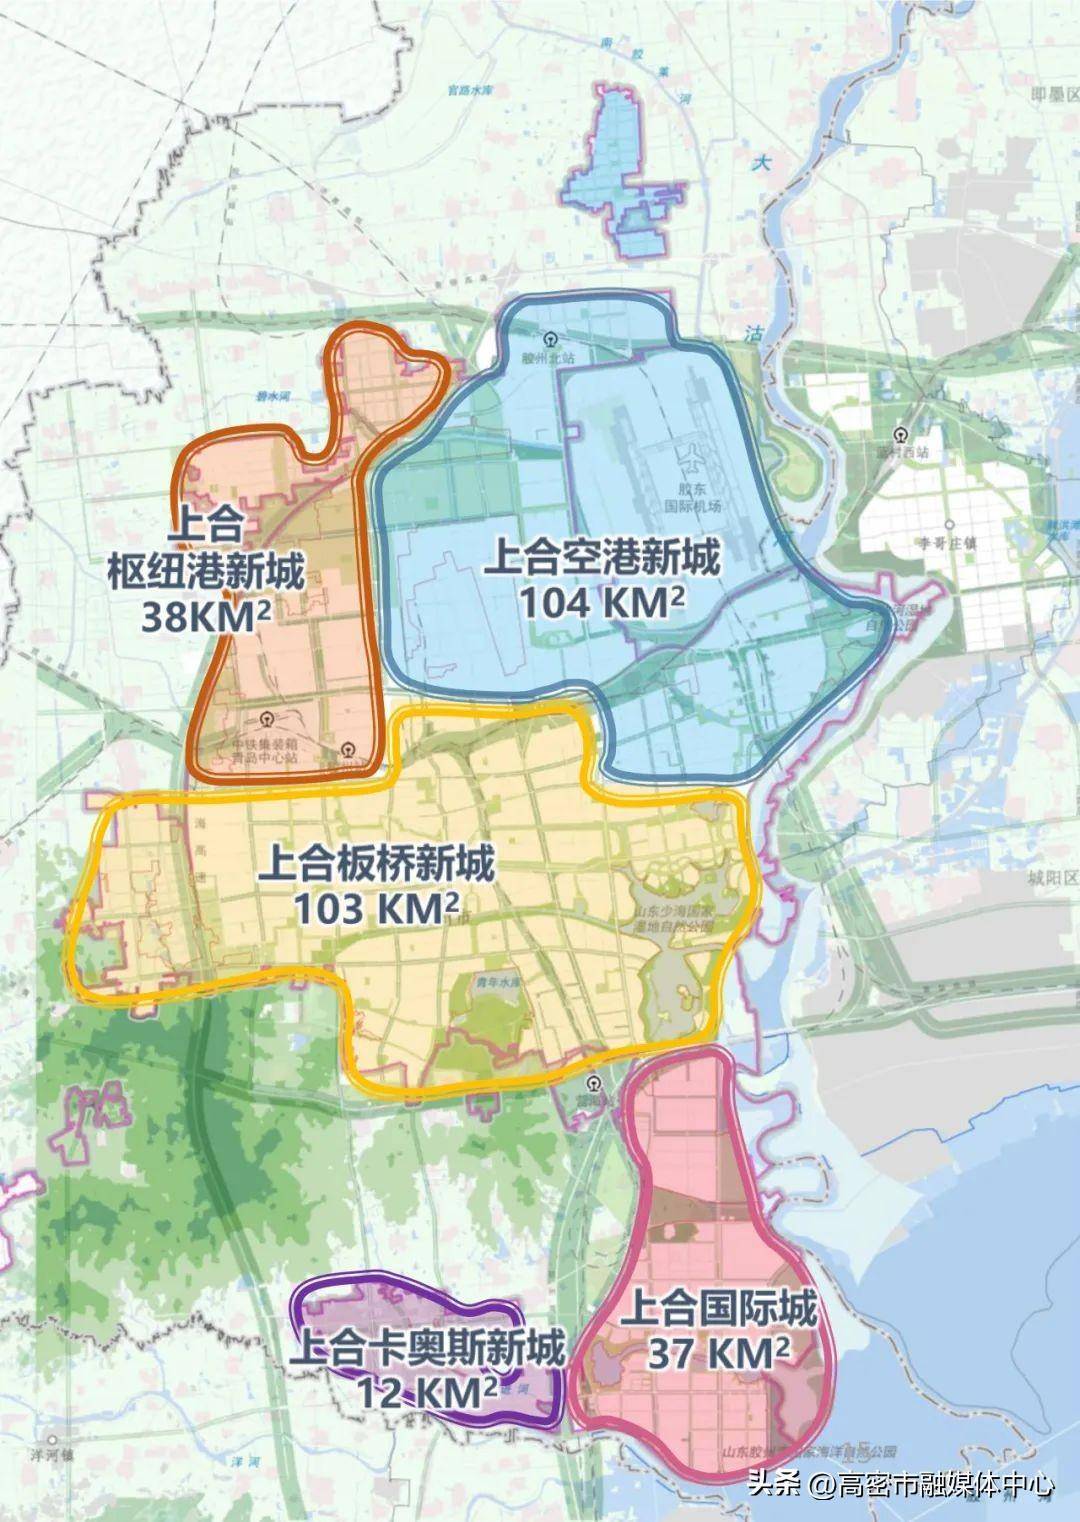 座谈中,胶州市自然资源和规划局介绍了五大新城规划,双方围绕加快